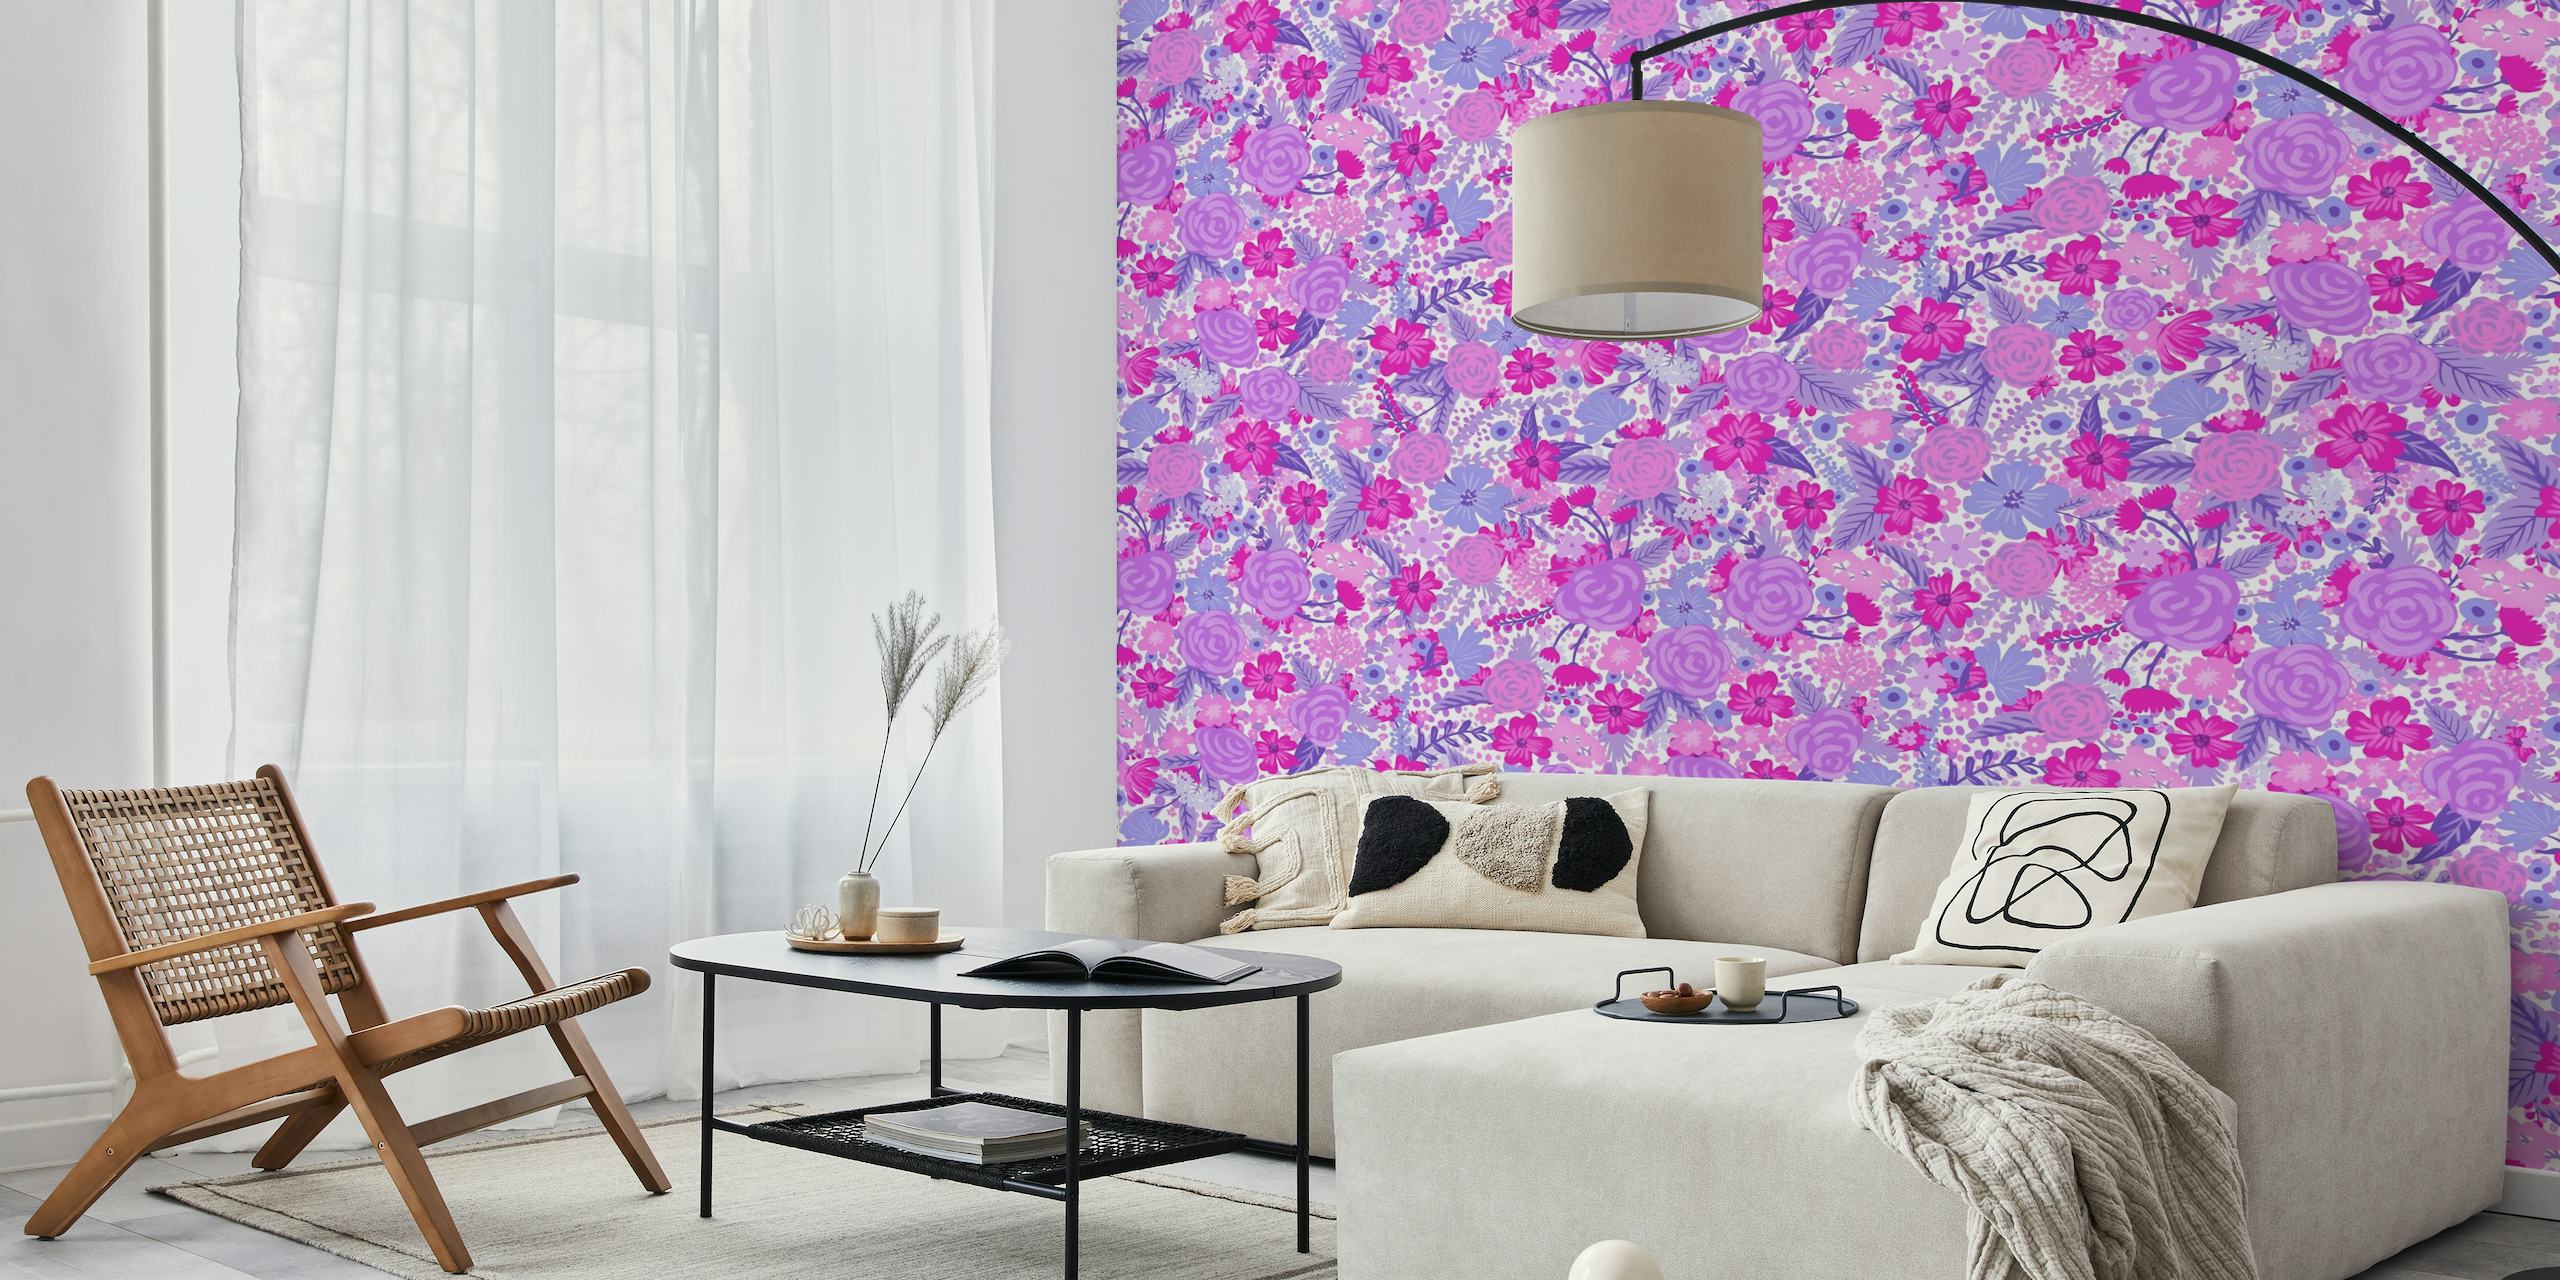 Eloisa ja monimutkainen Intangible Flower Pattern 3 -seinämaalaus, jossa on violetteja ja vaaleanpunaisia kukkakuvioita.